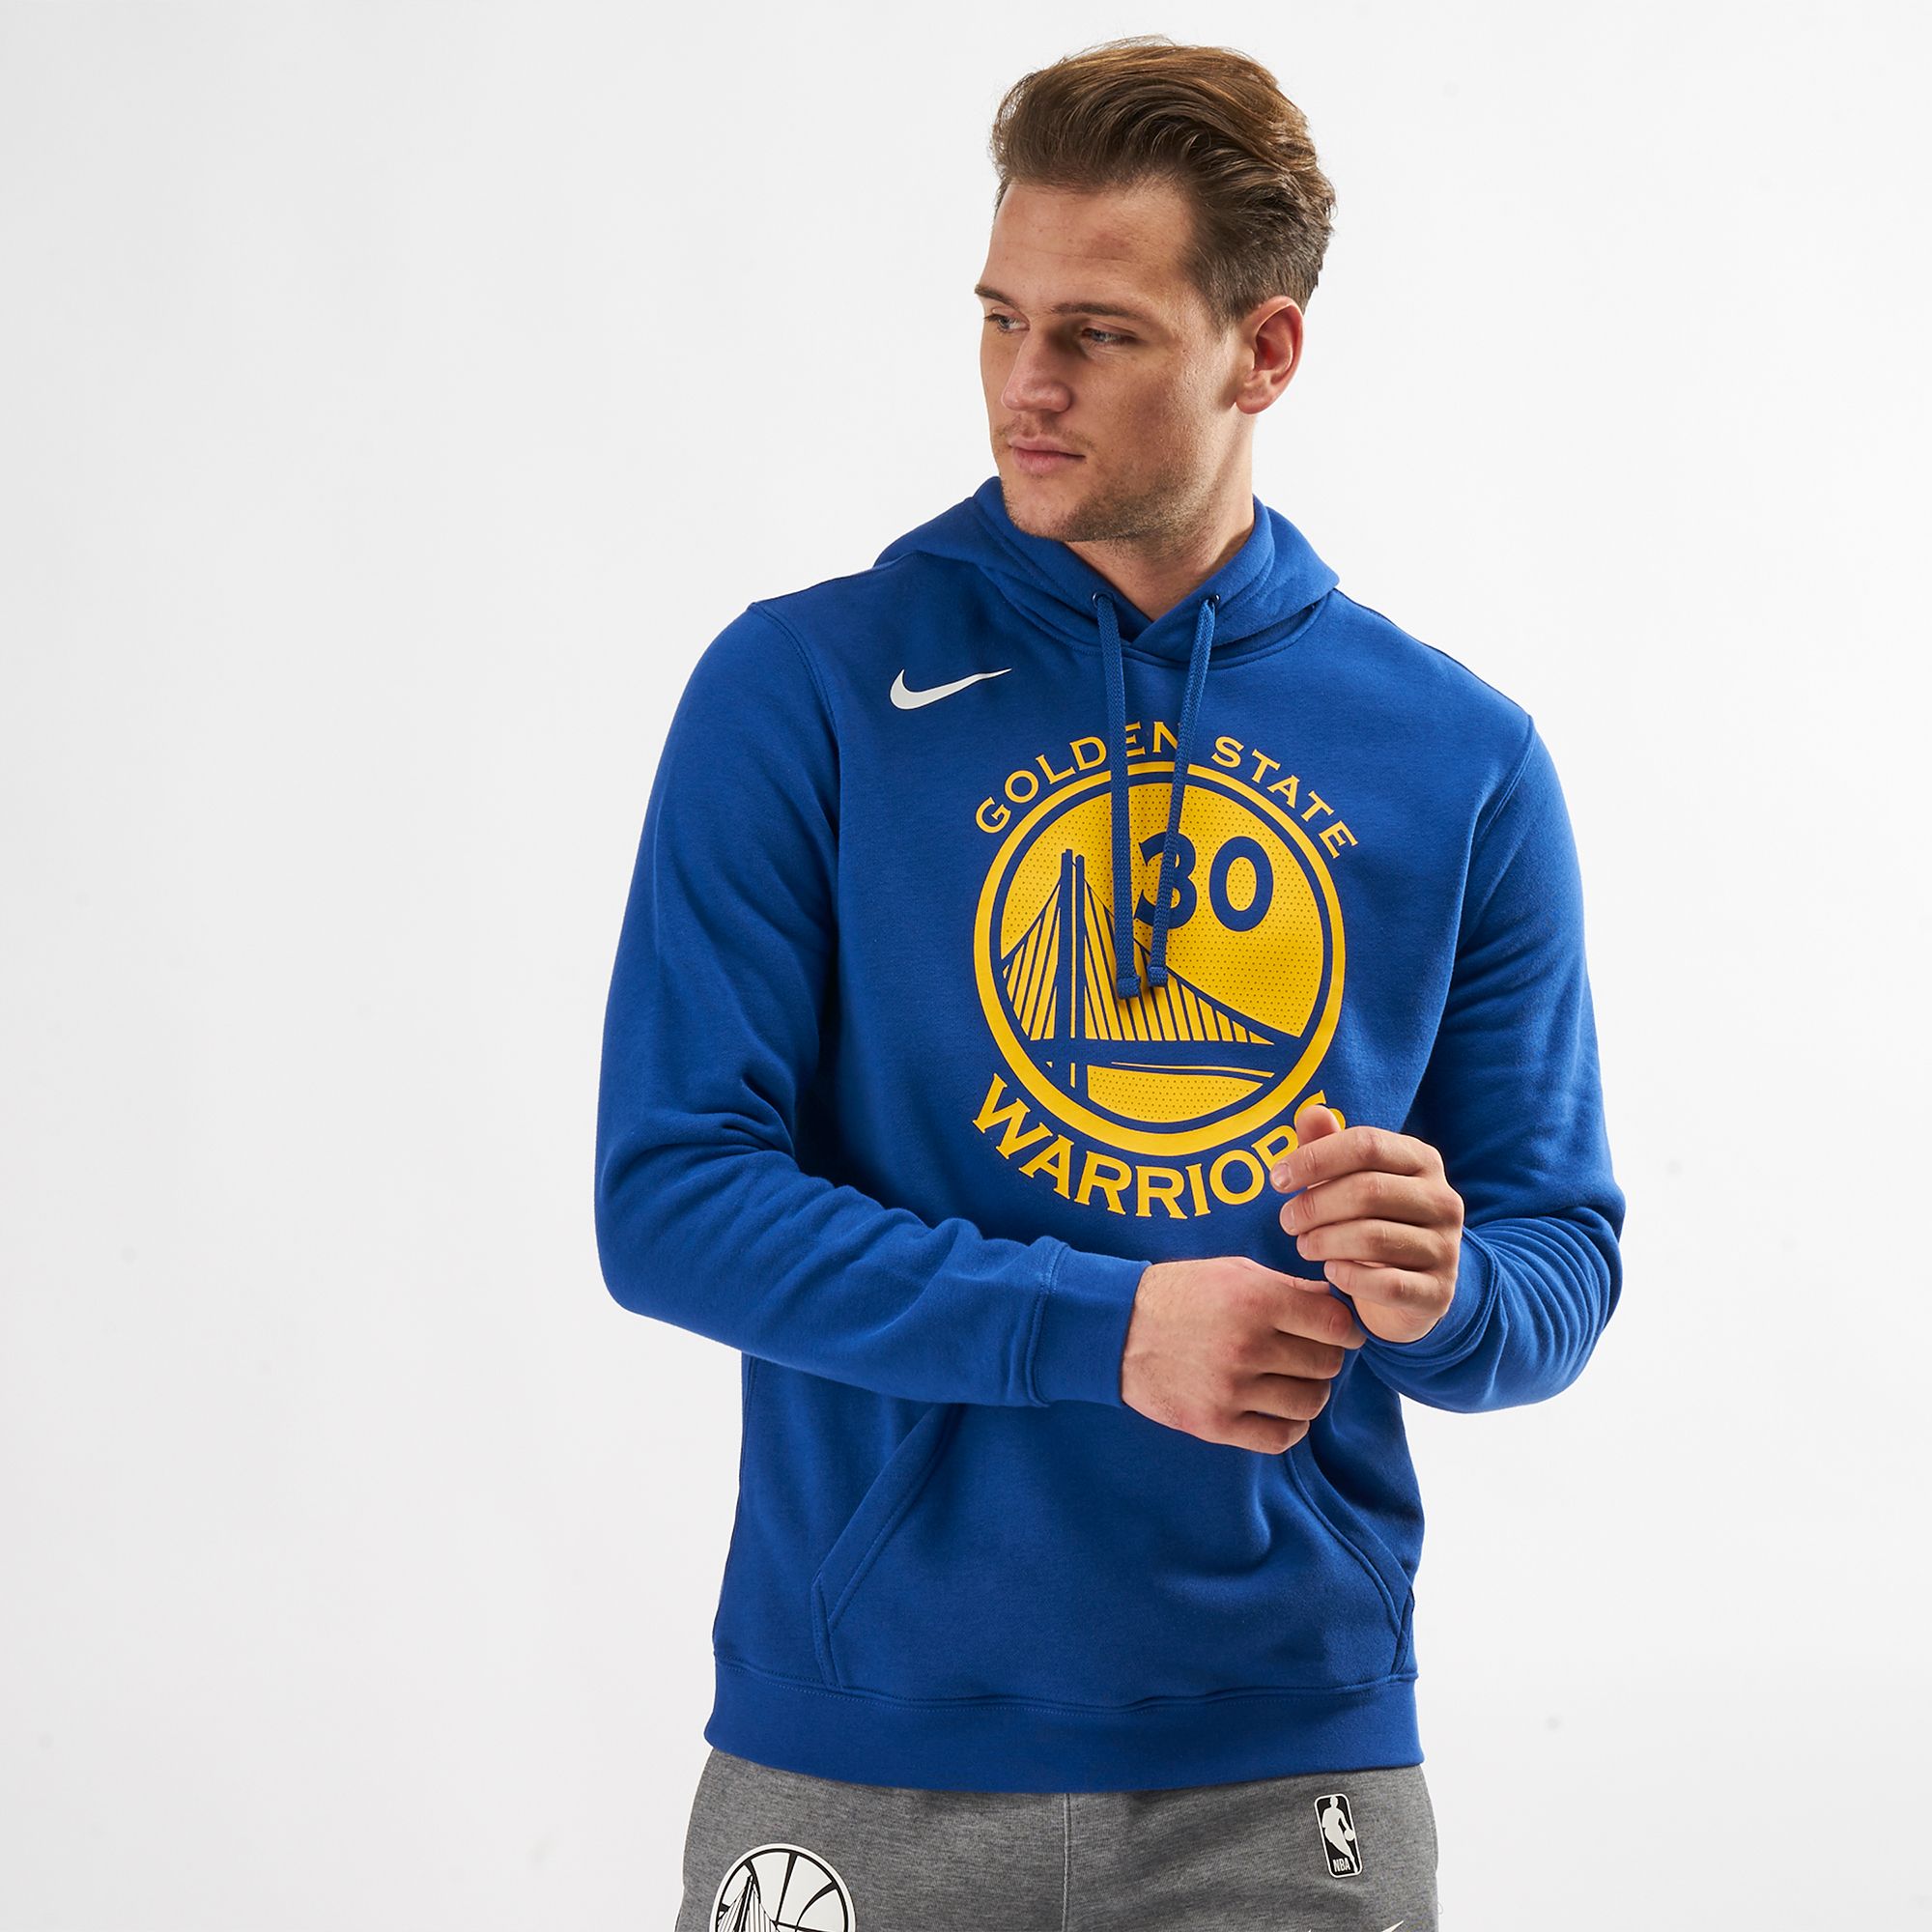 Golden State Warriors Men's Nike NBA T-Shirt. Nike LU